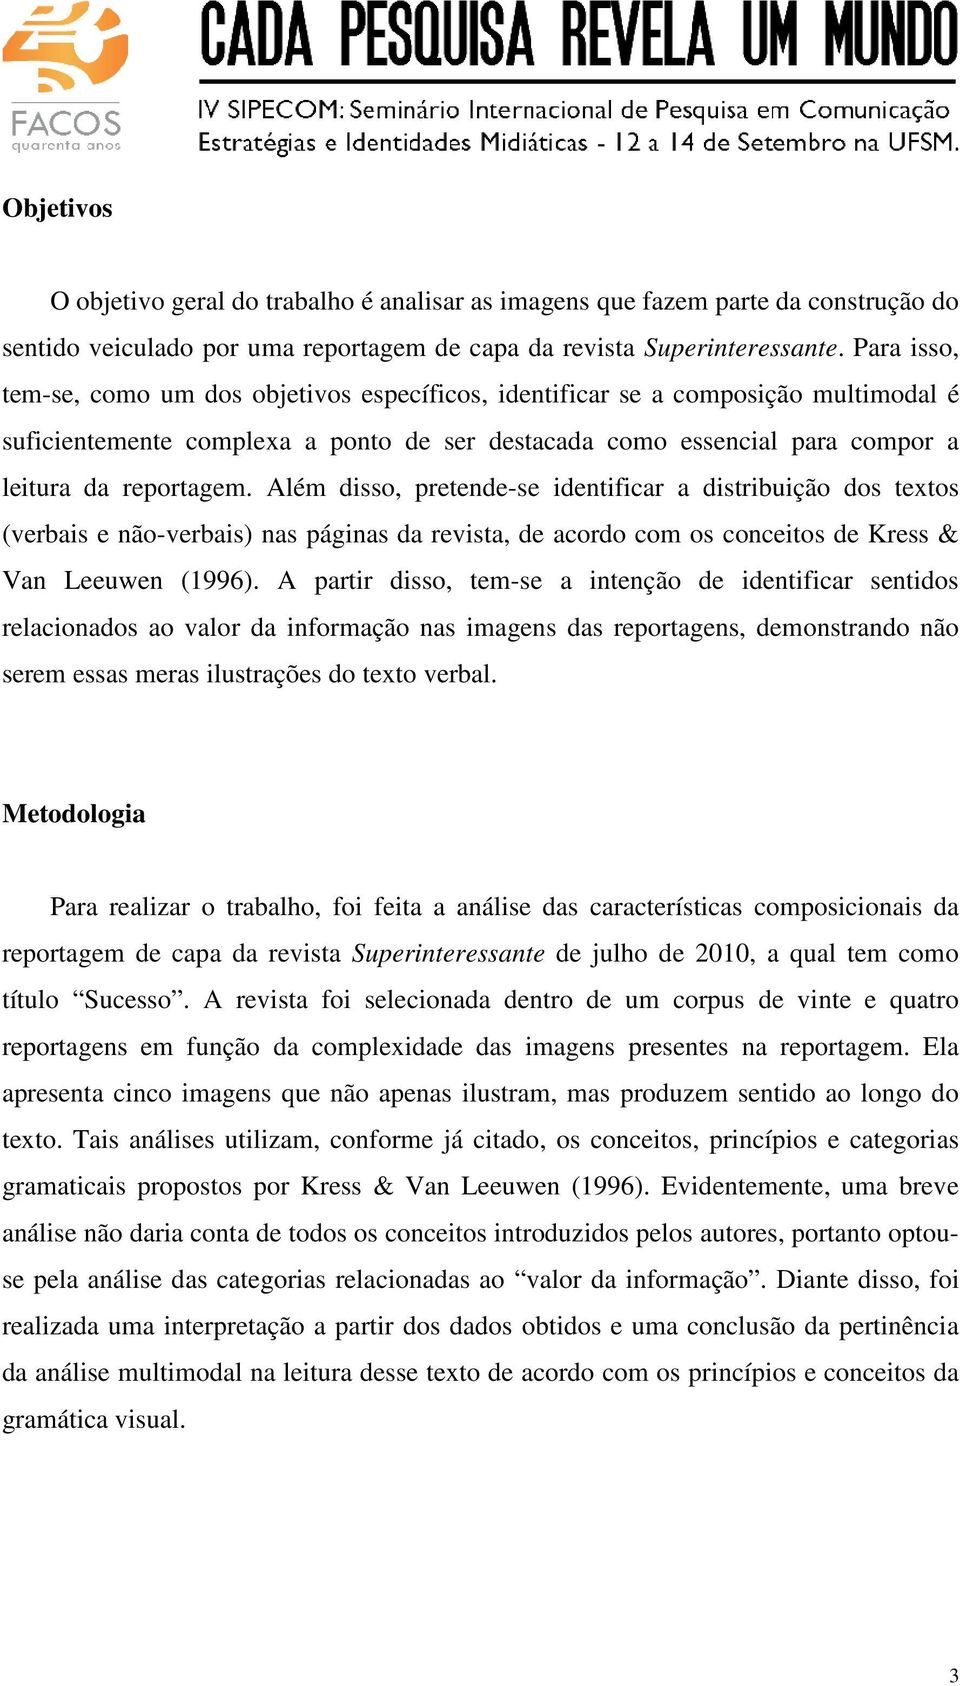 Além disso, pretende-se identificar a distribuição dos textos (verbais e não-verbais) nas páginas da revista, de acordo com os conceitos de Kress & Van Leeuwen (1996).